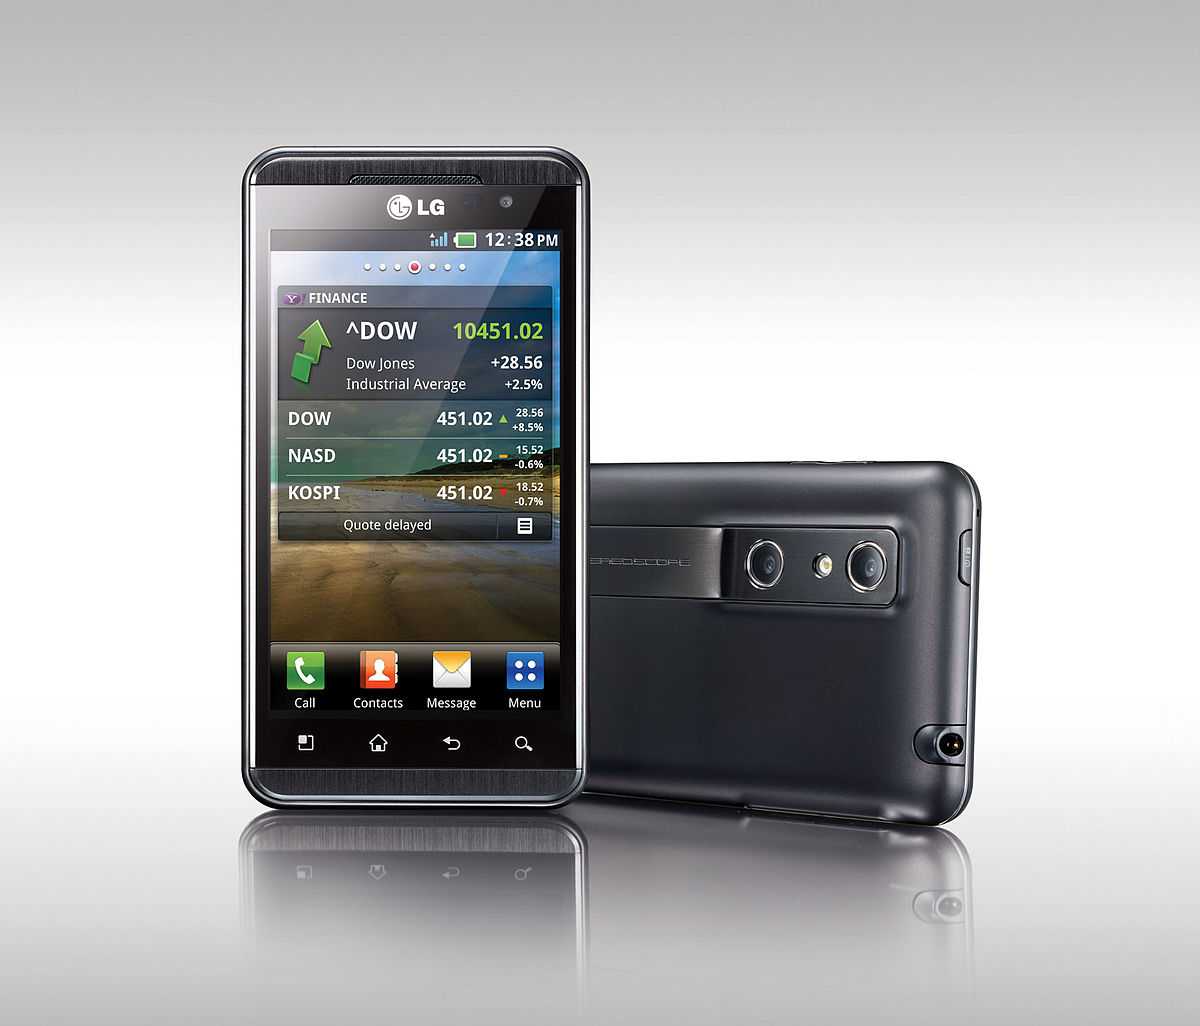 Lg optimus 3d max (черный) - купить  в донецк, скидки, цена, отзывы, обзор, характеристики - мобильные телефоны